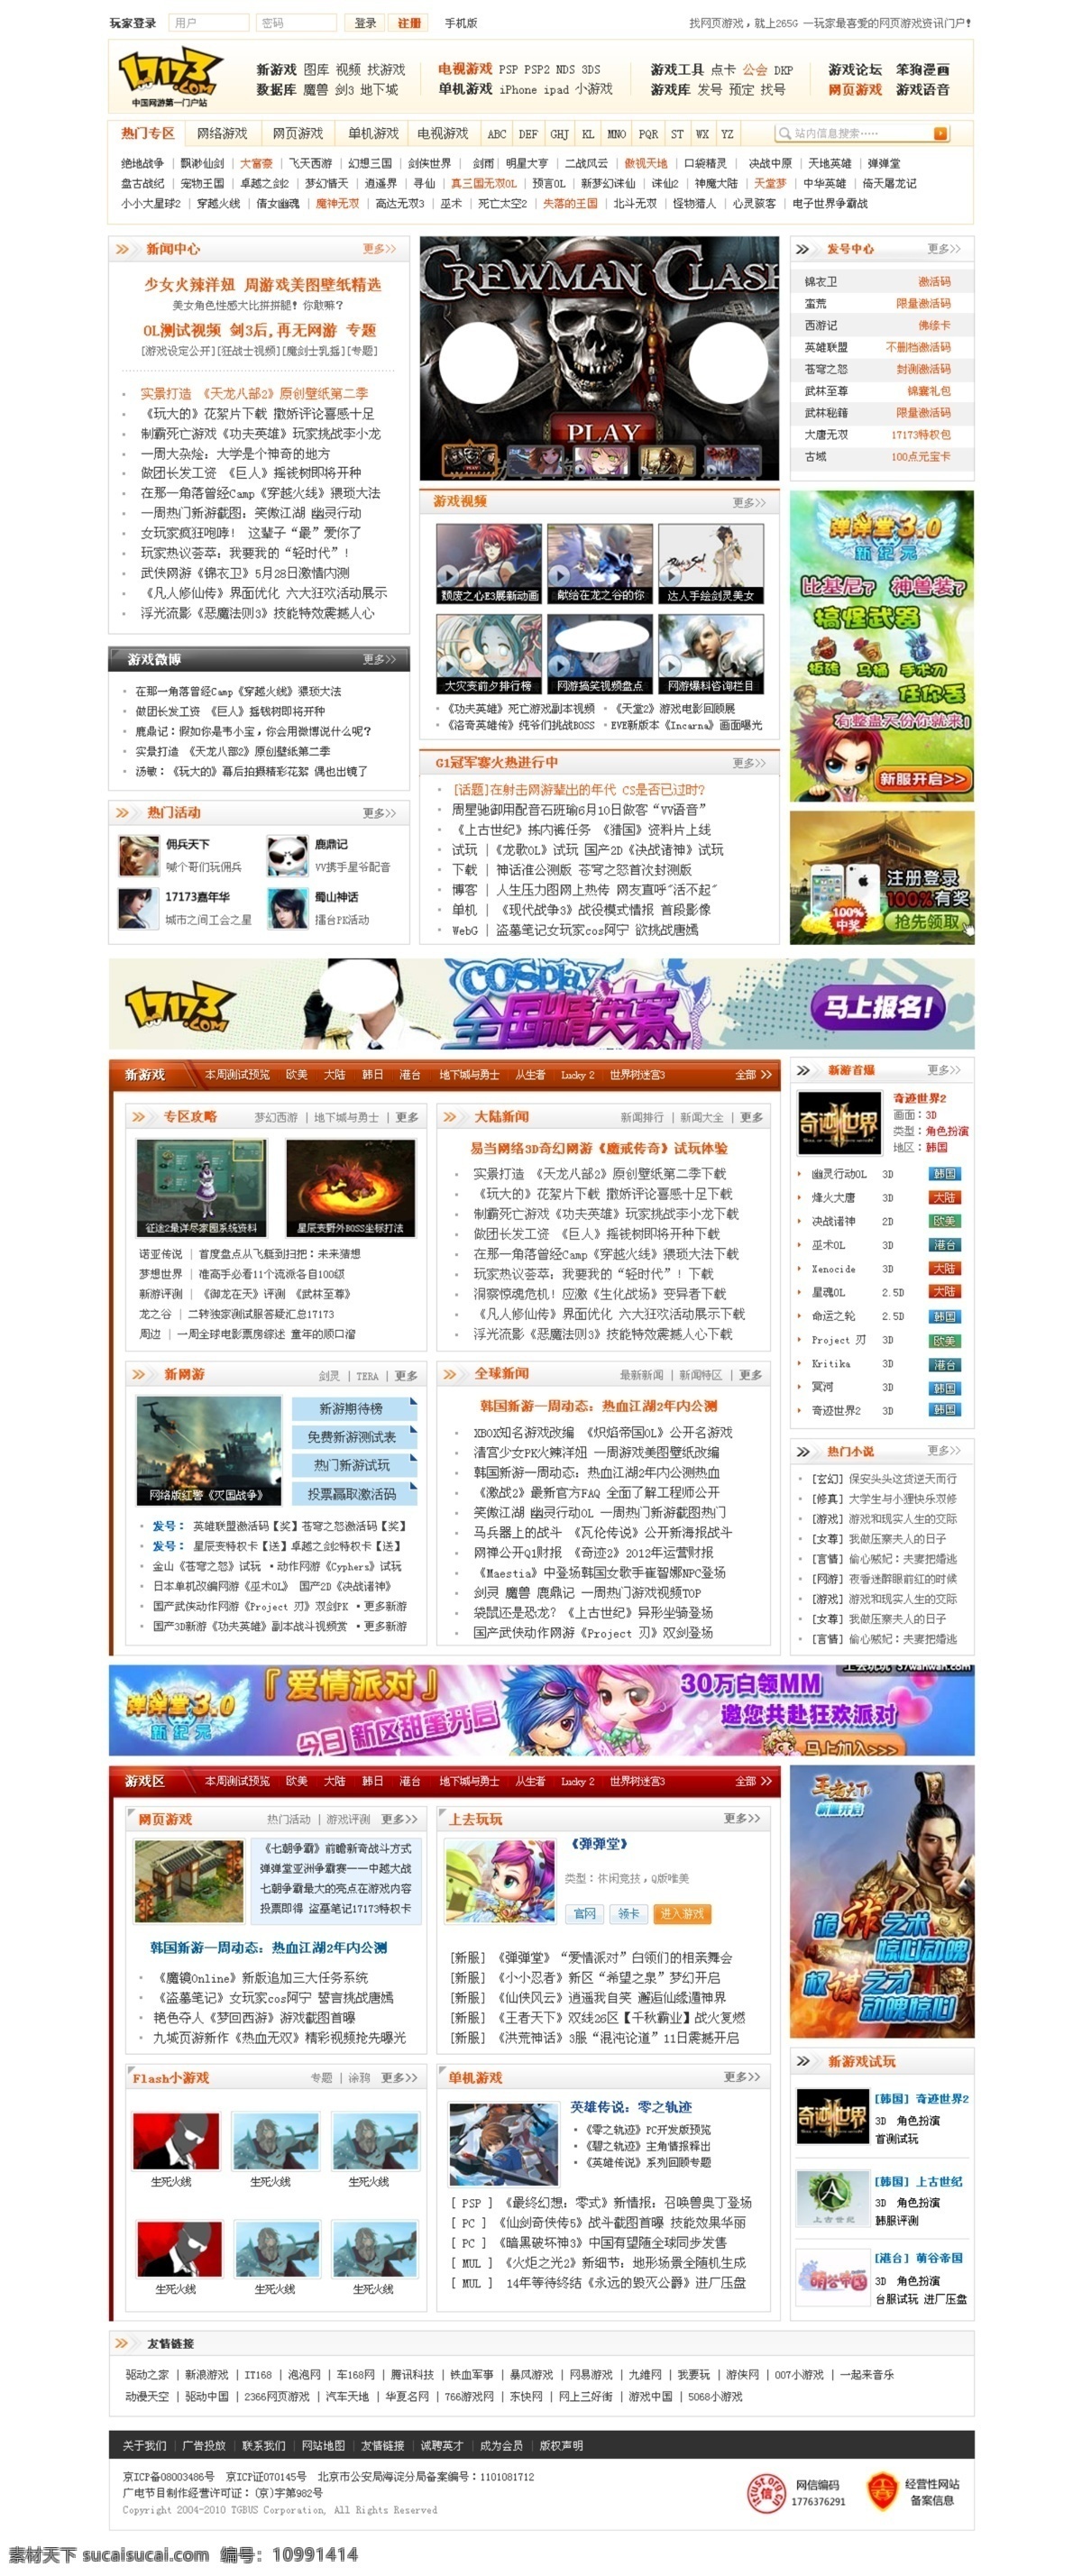 按钮 导航 门户网站 视频 网页模板 游戏 源文件 中文模版 游戏门户网站 个性效果 psd源文件